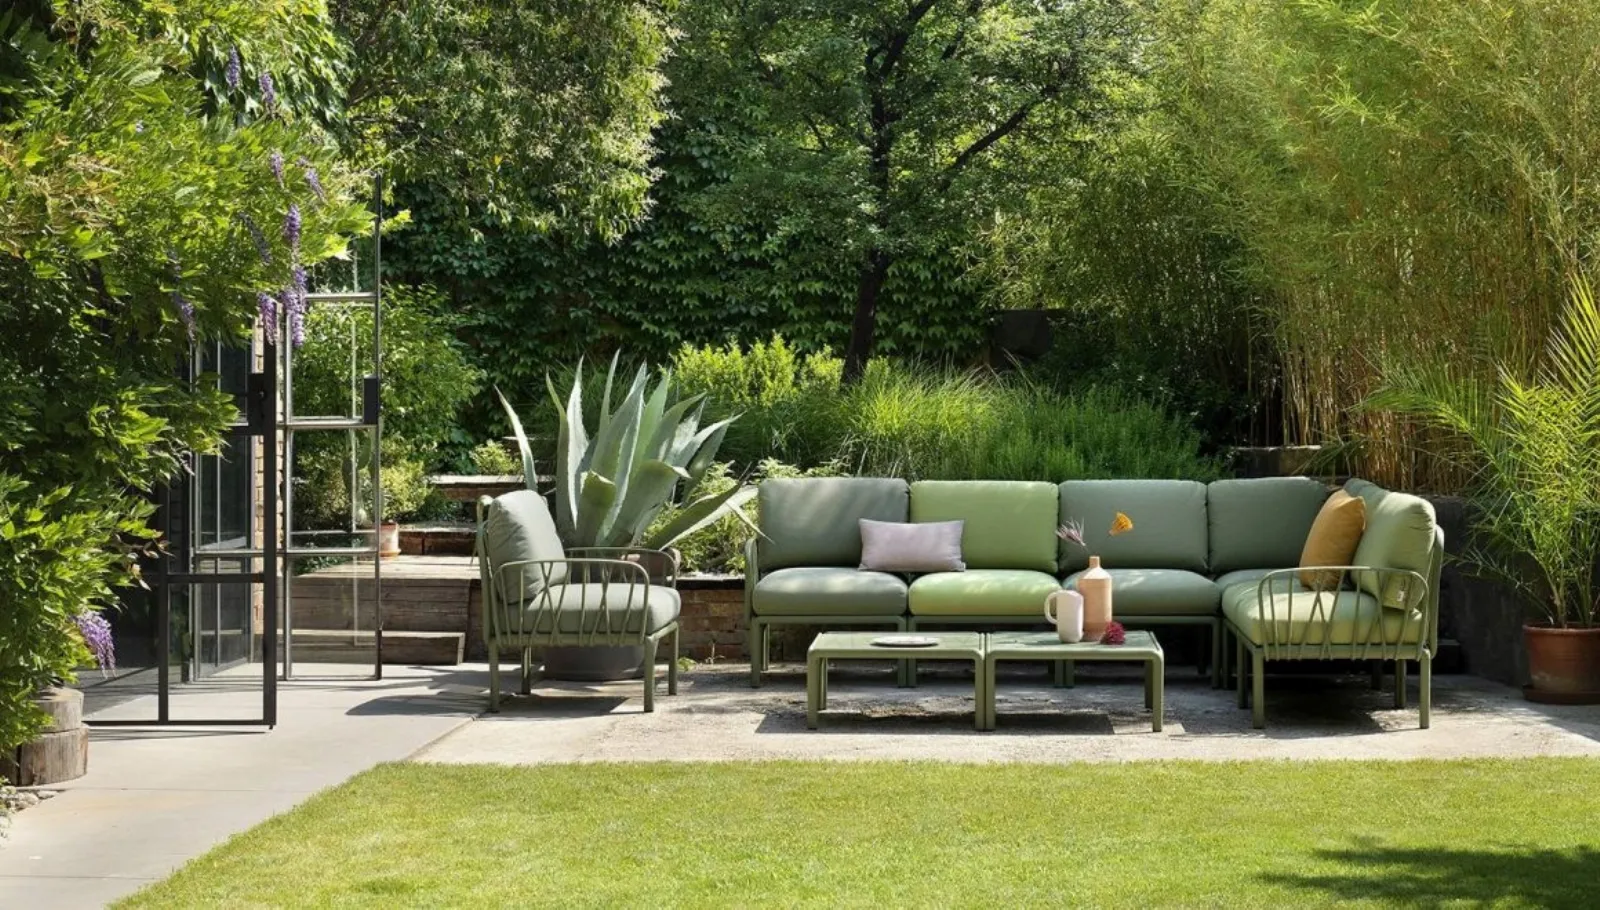 Devi comprare un divano da giardino? Ti aiutiamo noi